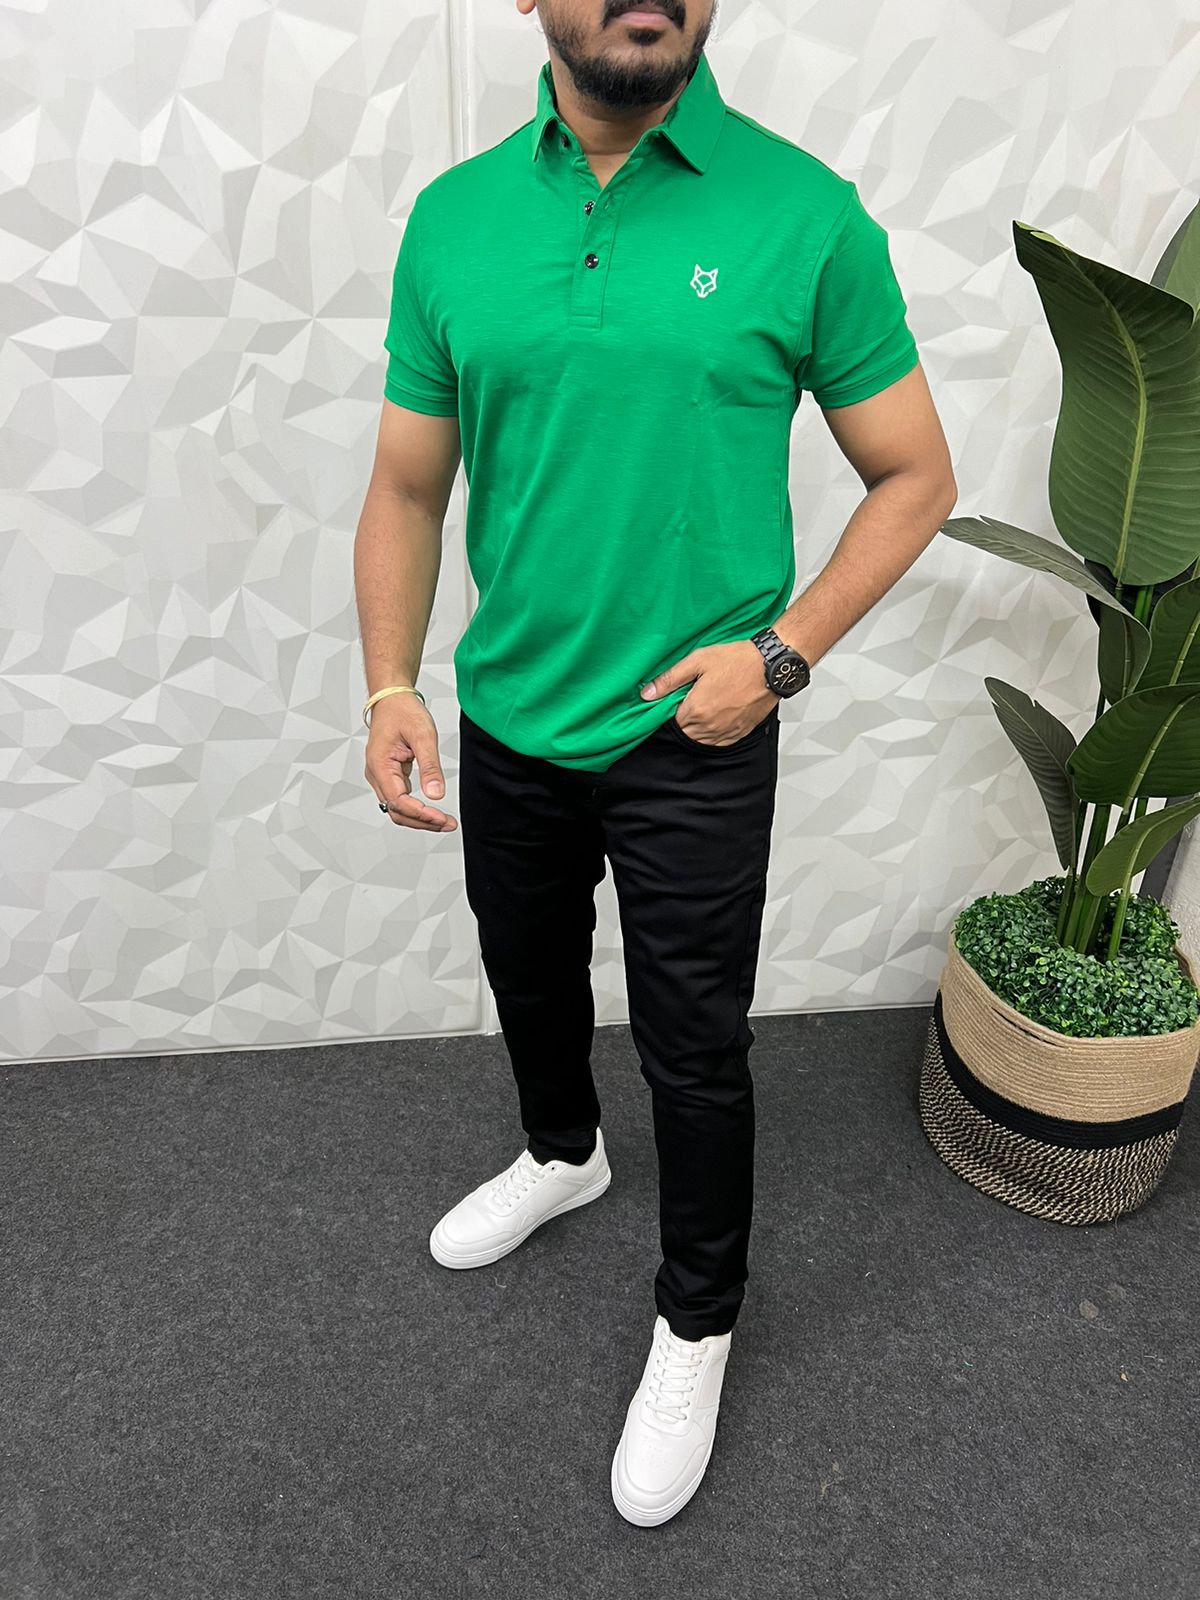 Glaze Imp lycra collar t-shirt ( green )